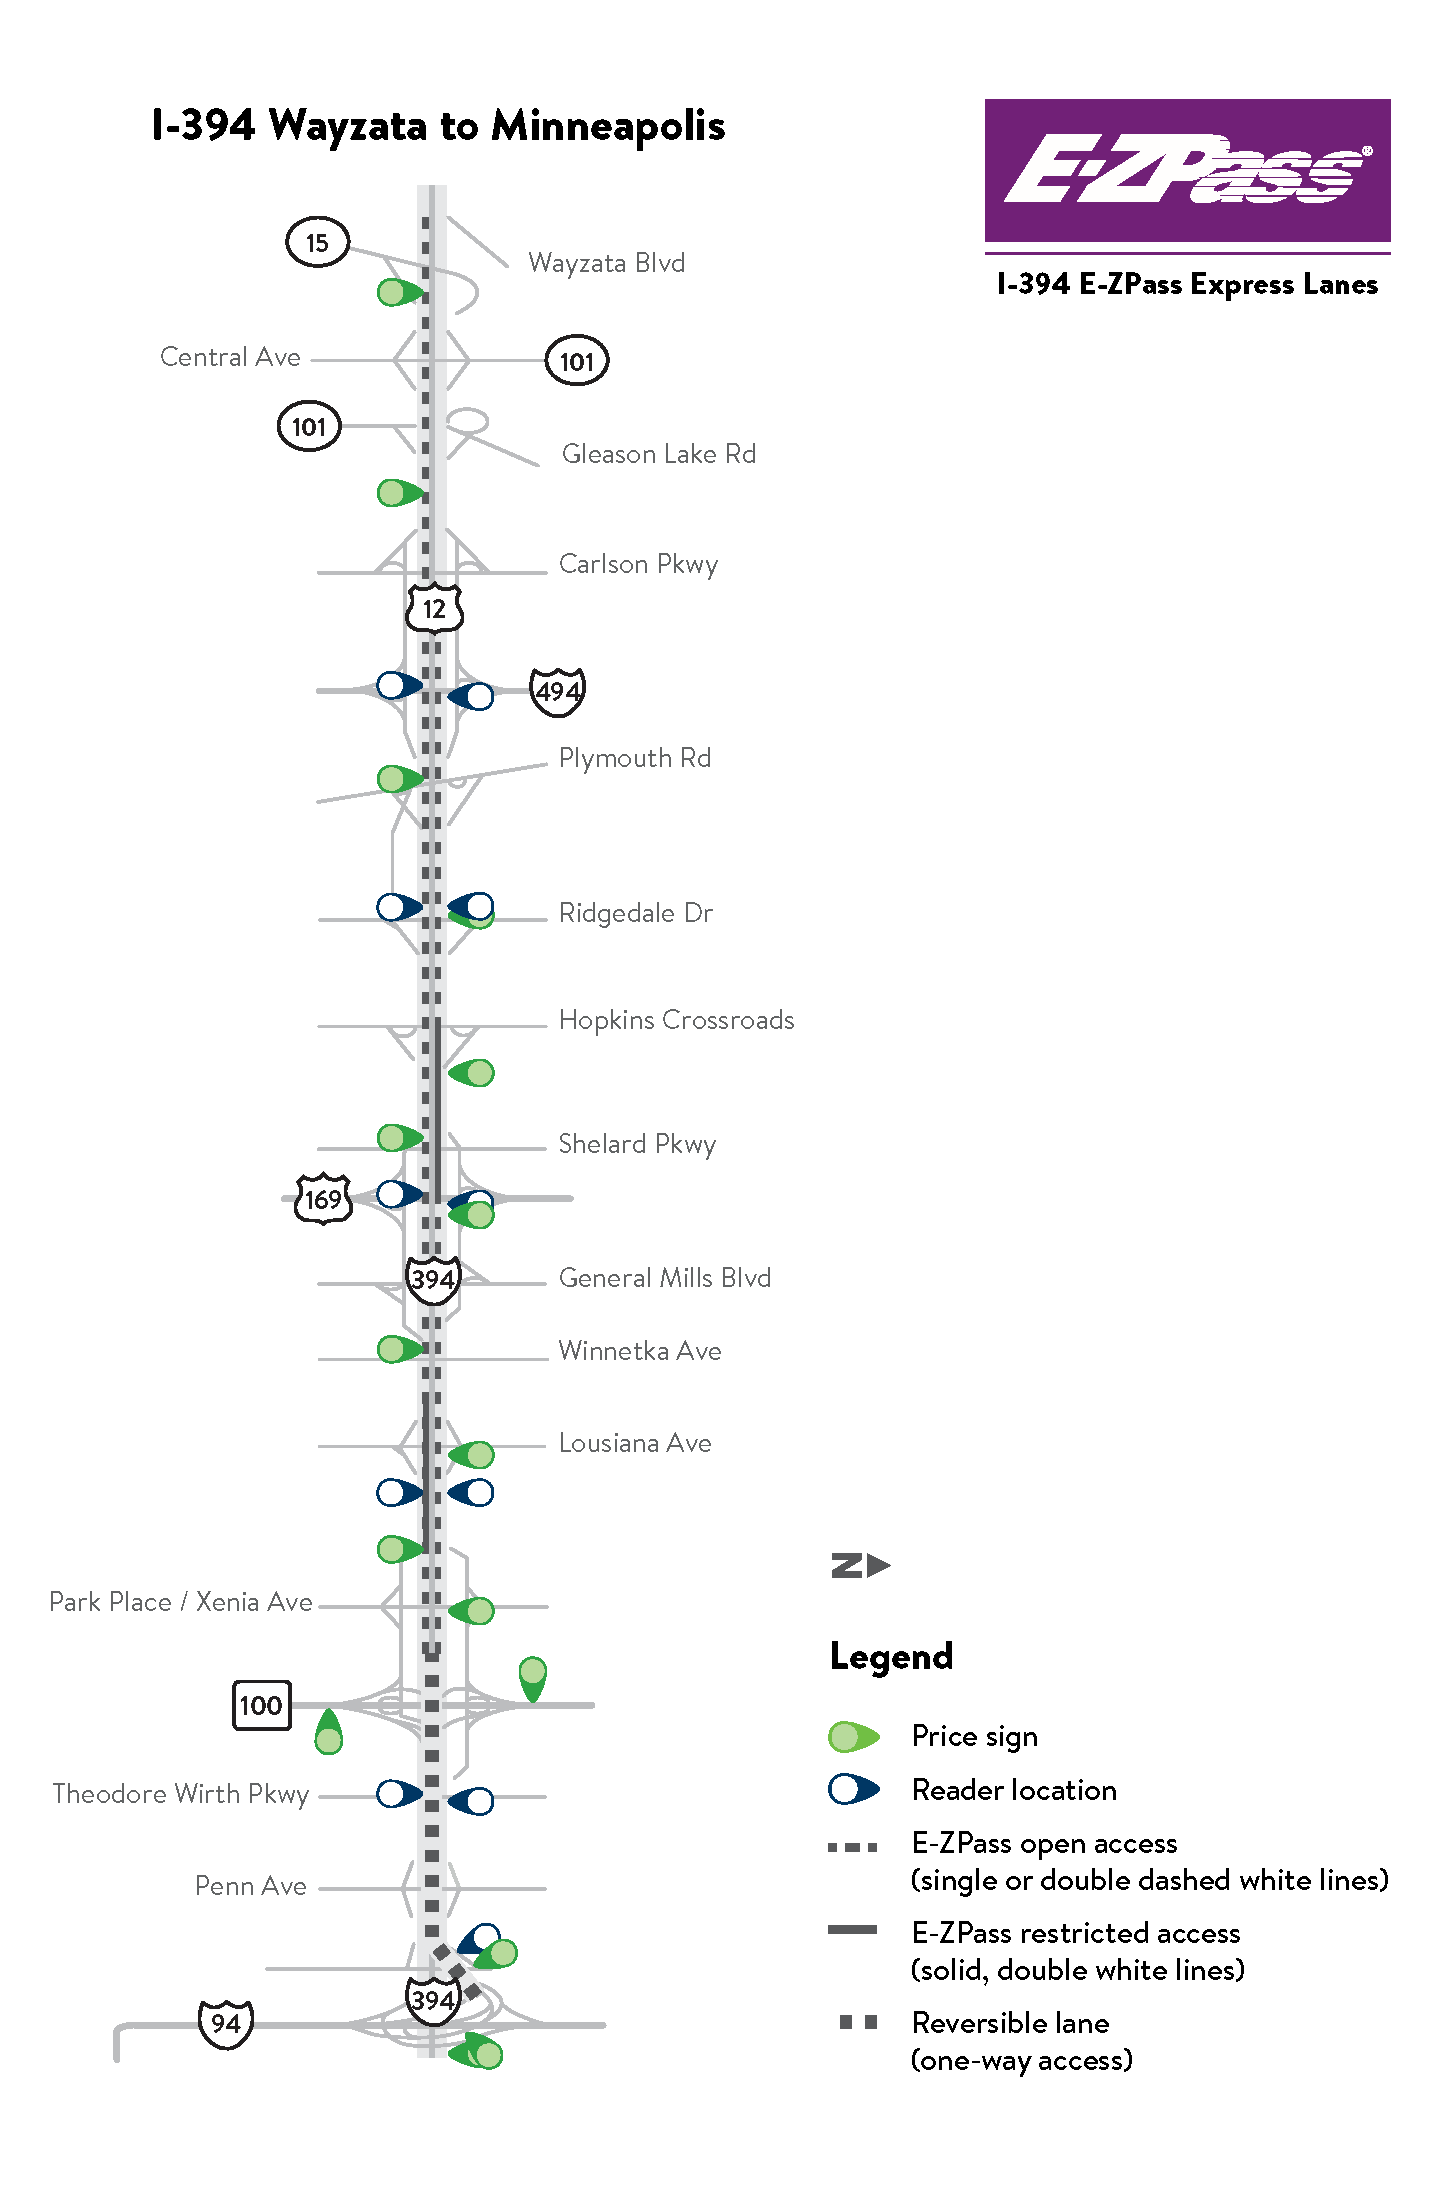 I-394 E-ZPass express lane map from Wayzata to Minneapolis